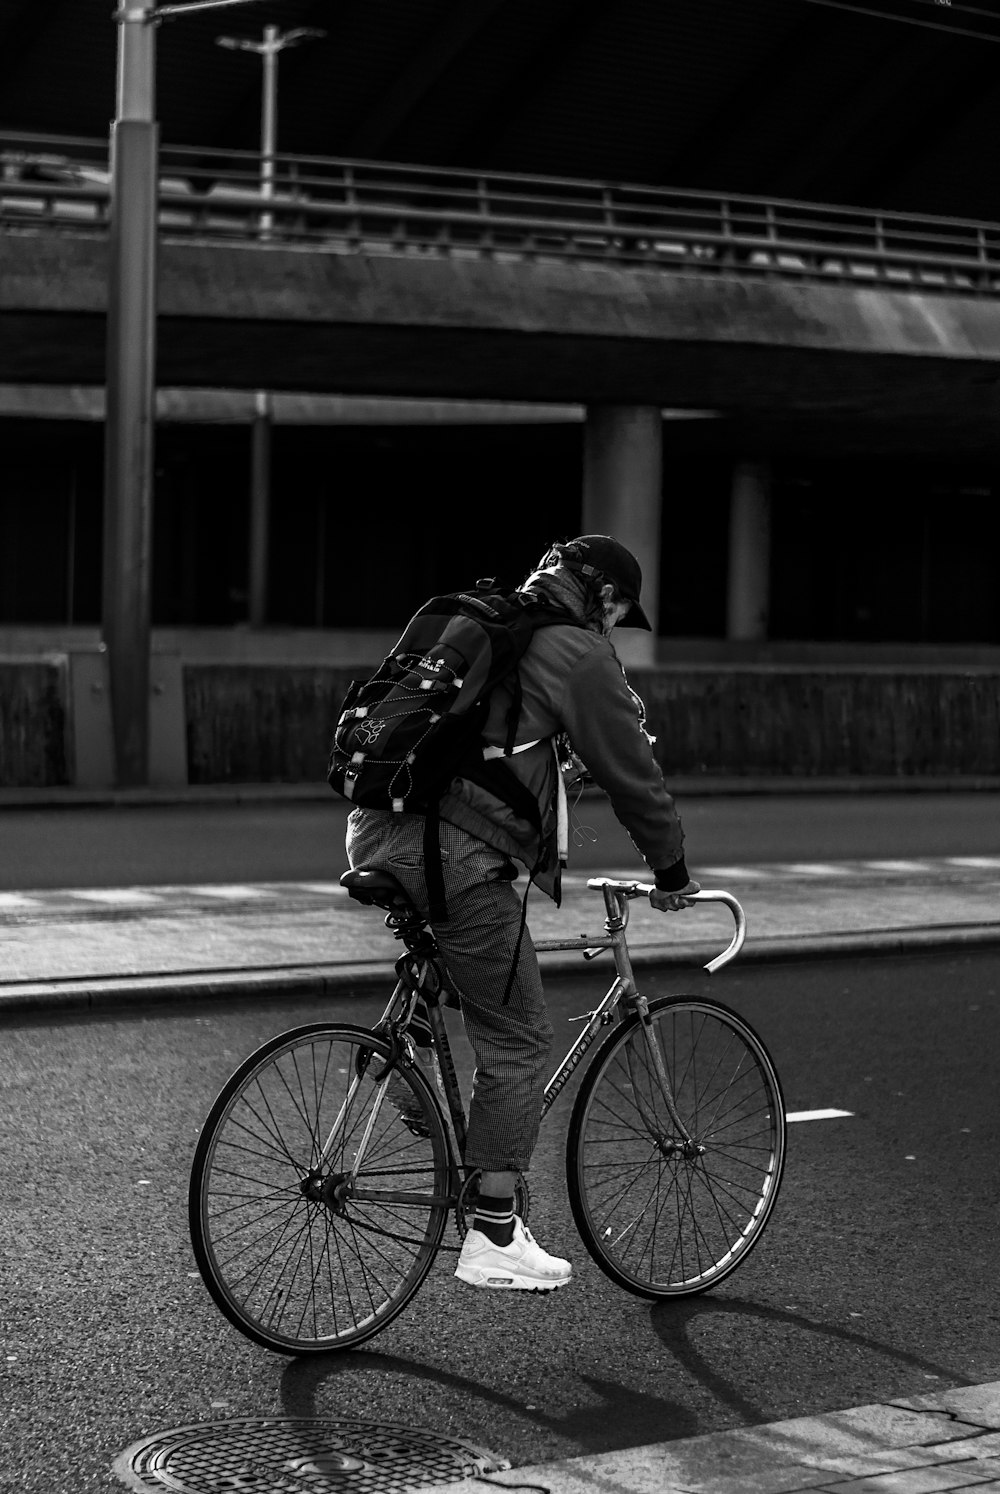 검은 재킷과 바지를 입은 남자가 낮 동안 도로에서 자전거를 타고 있다